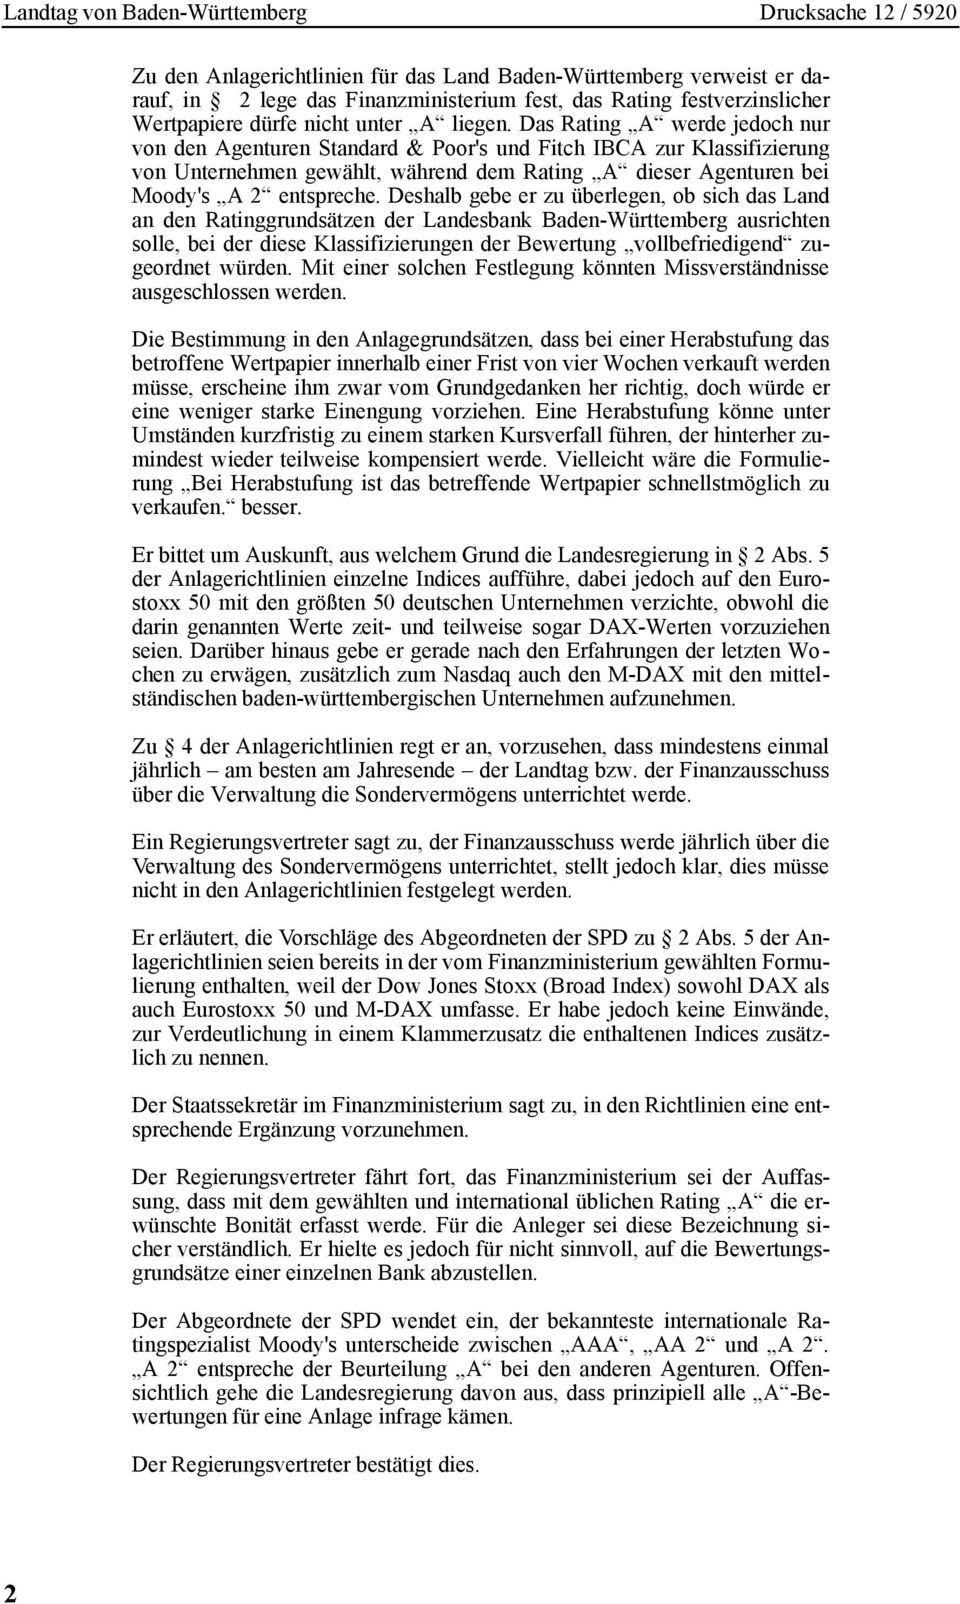 Deshalb gebe er zu überlegen, ob sich das Land an den Ratinggrundsätzen der Landesbank Baden-Württemberg ausrichten solle, bei der diese Klassifizierungen der Bewertung vollbefriedigend zugeordnet